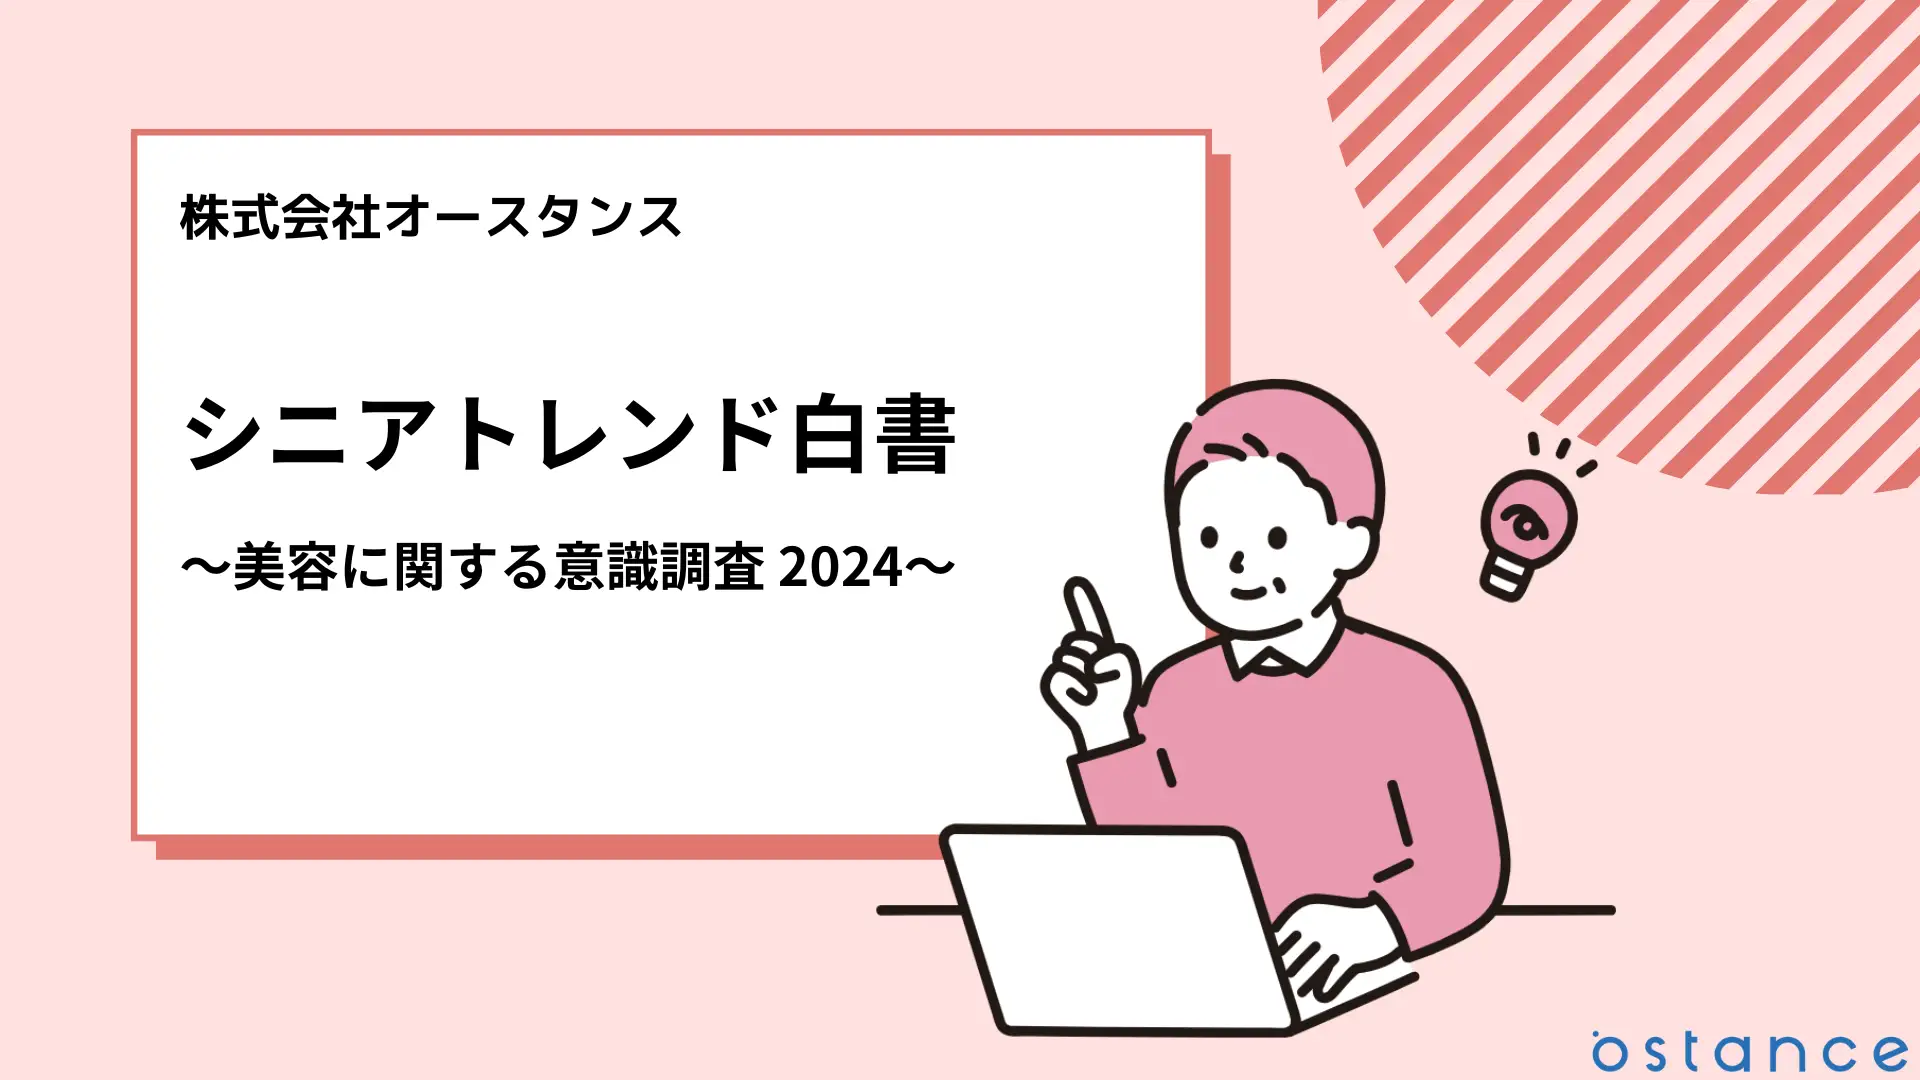 シニアトレンド白書〜美容に関する意識調査2024〜